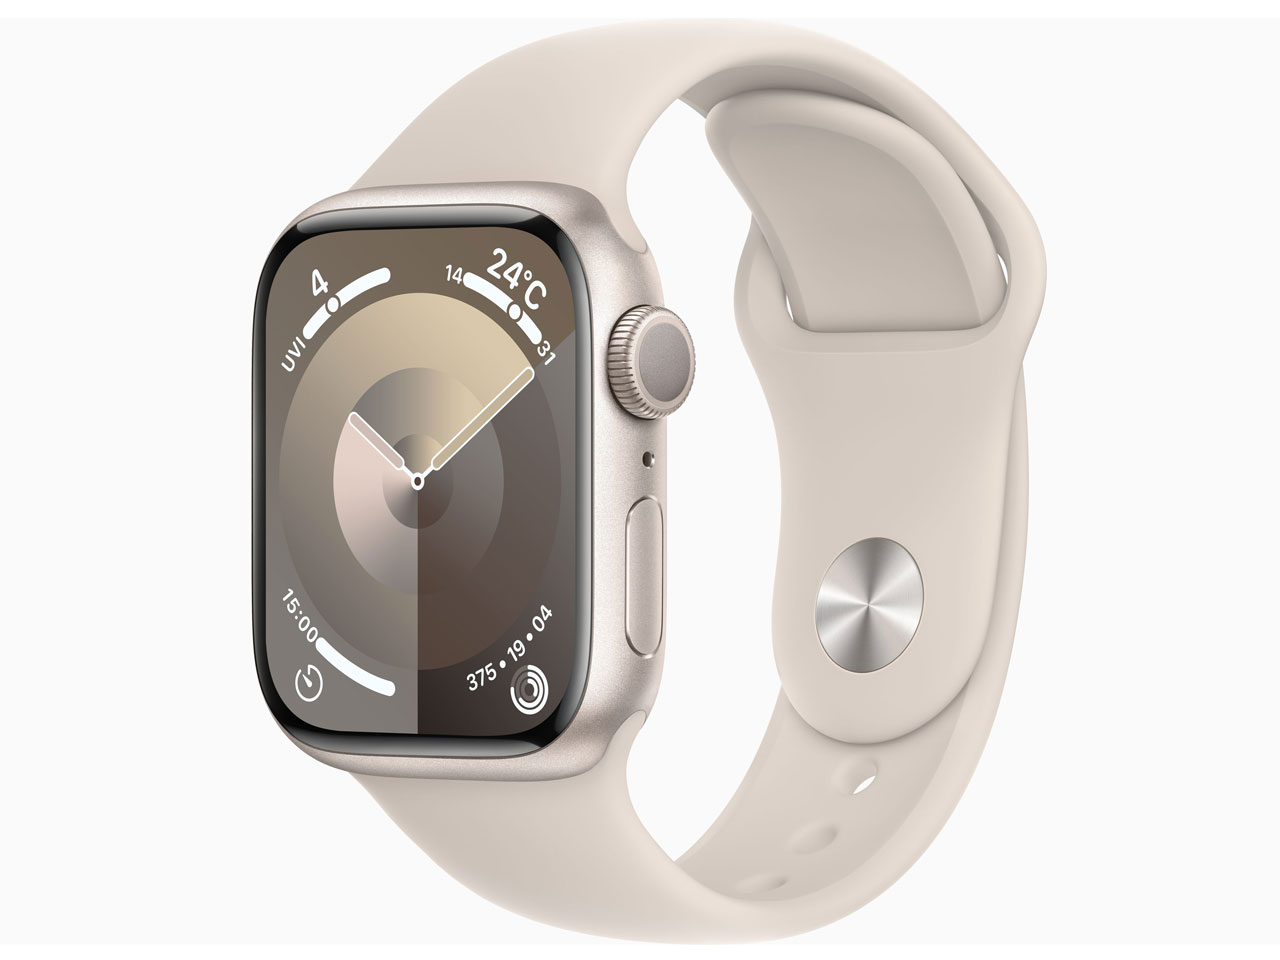 9,890円Apple Watch Series 6 常時表示対応！バンド5種類付き！